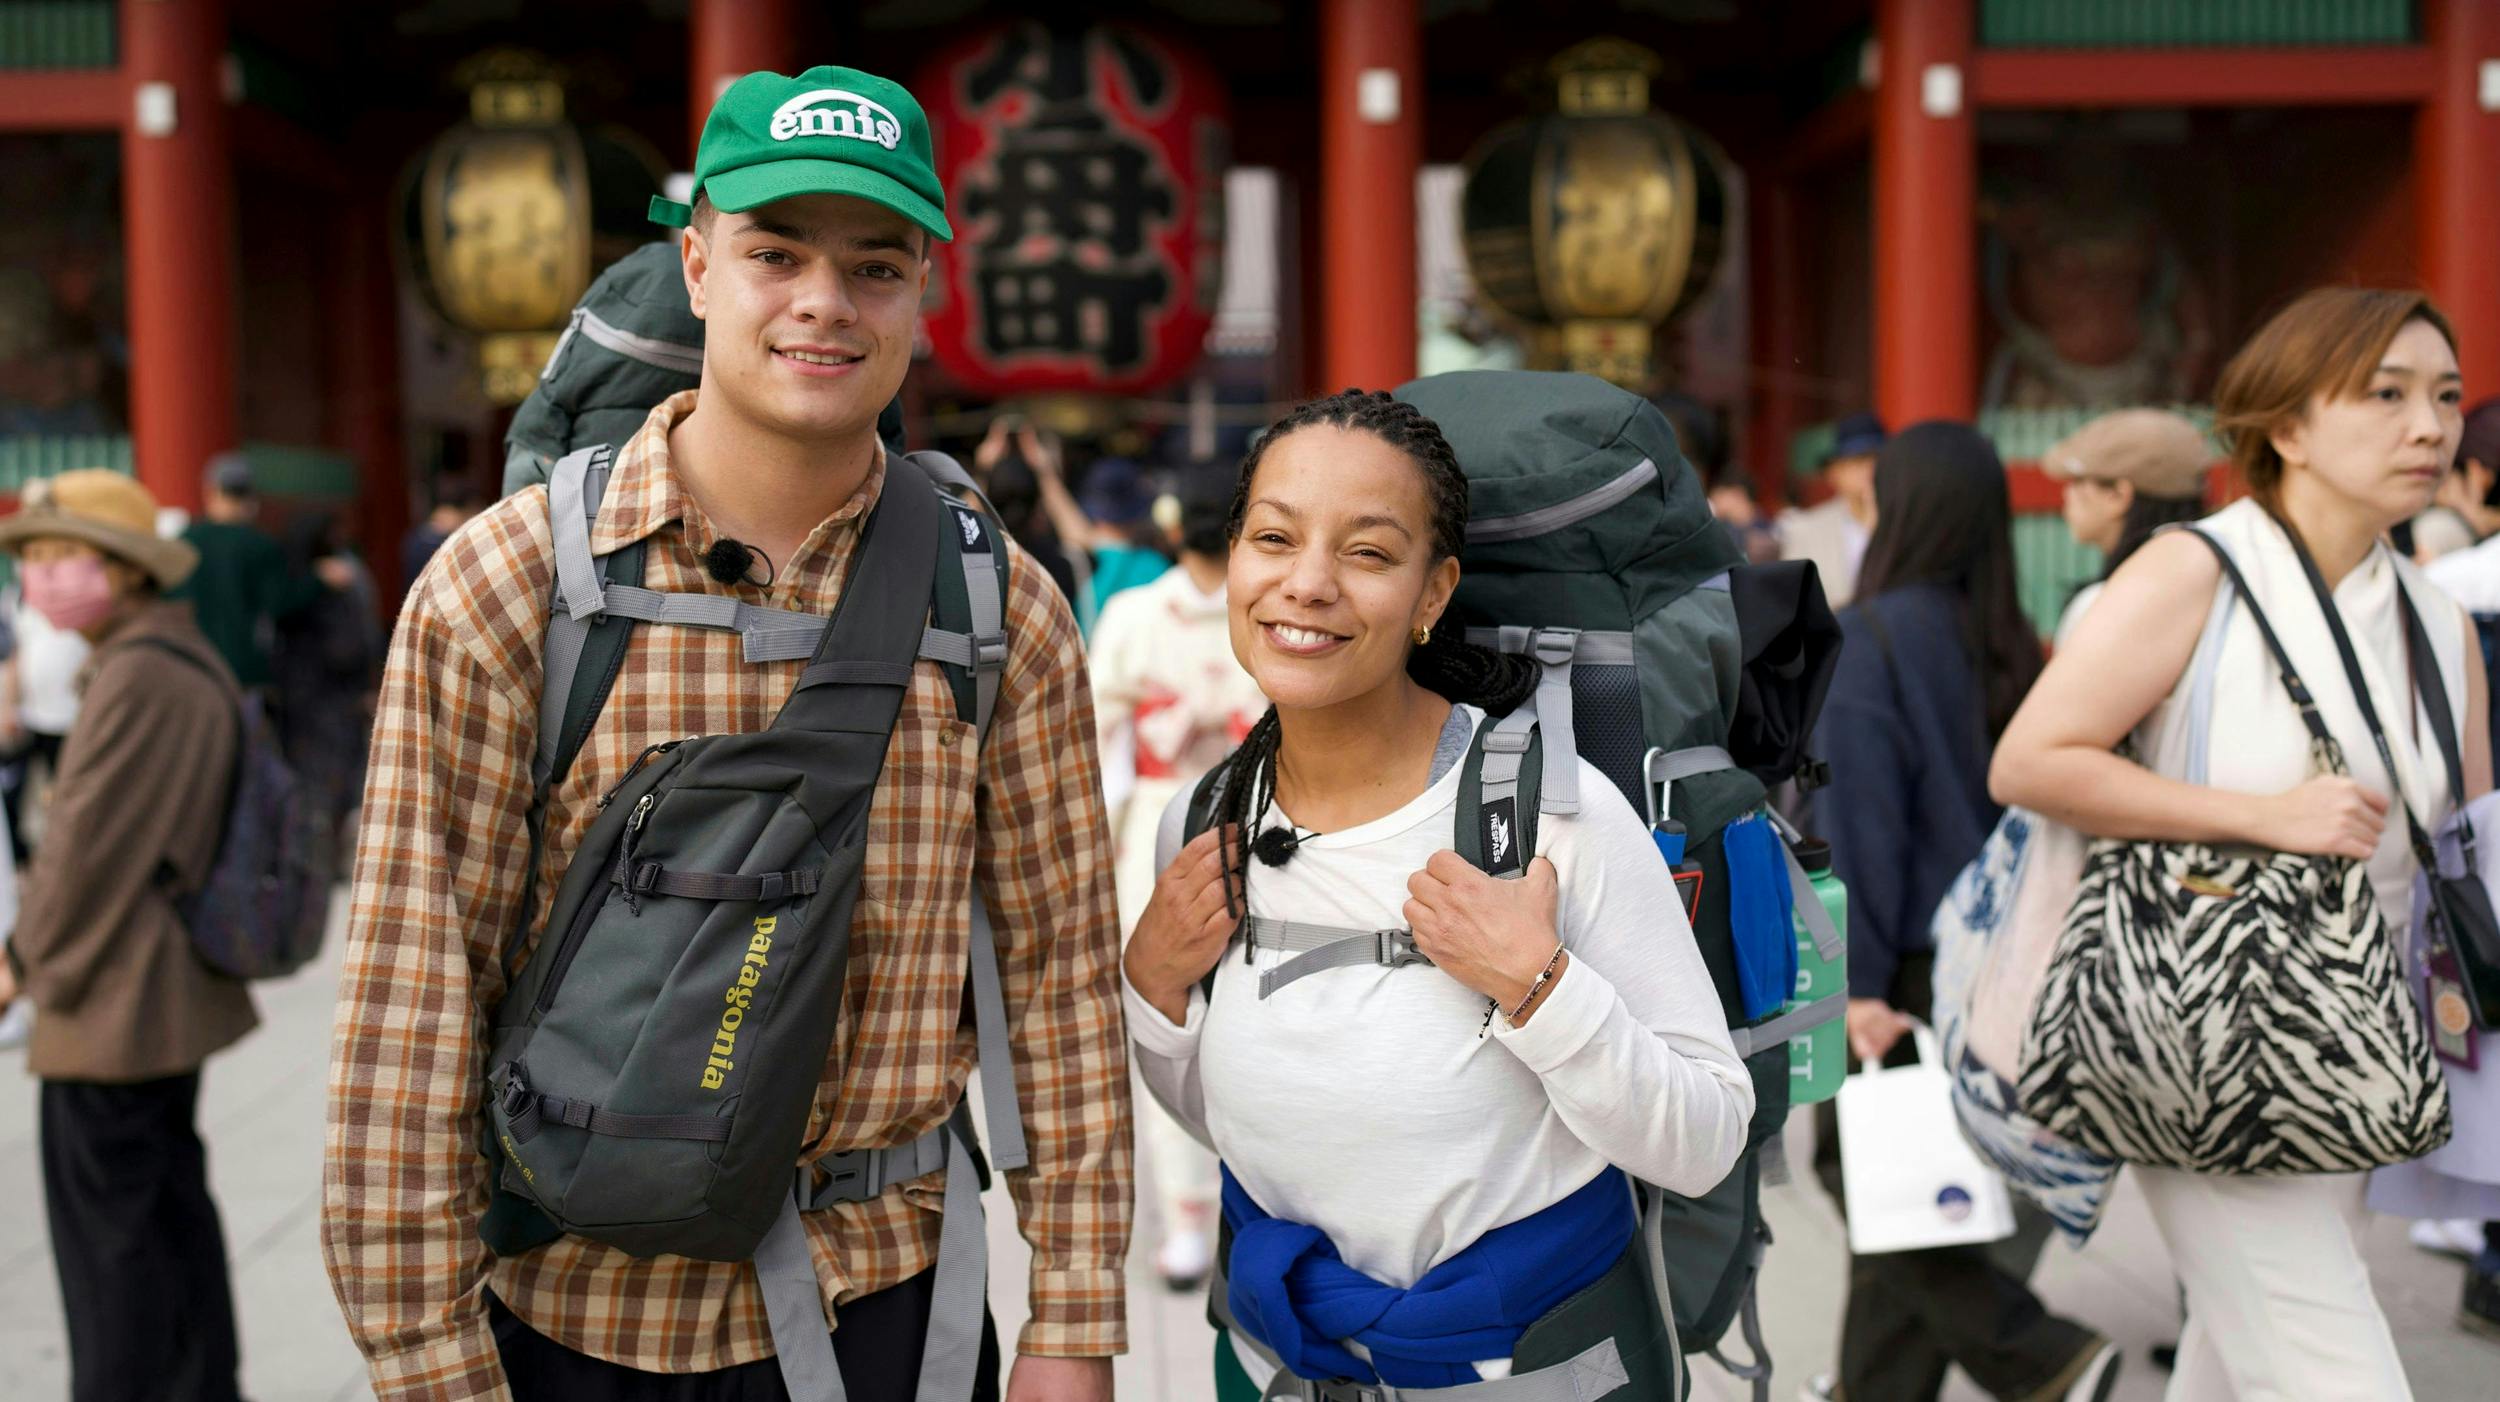 Det var Mariams forslag, at hun og Malik tilmeldte sig ”Først til verdens ende”. Her konkurrerer fem modige par om at komme først fra Tokyo til Bali.